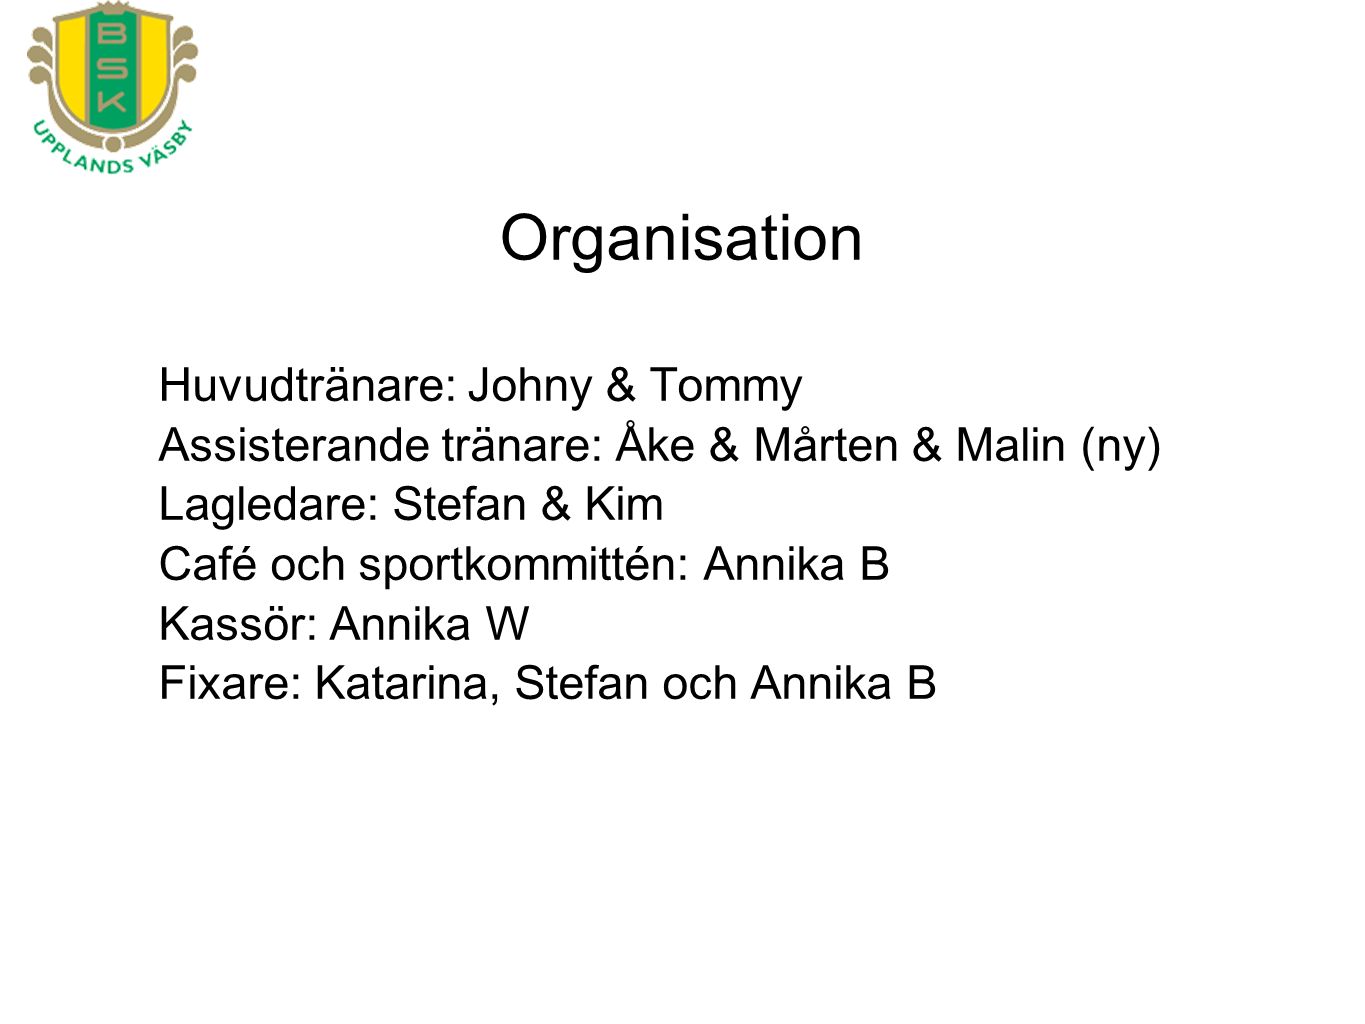 Huvudtränare: Johny & Tommy Assisterande tränare: Åke & Mårten & Malin (ny) Lagledare: Stefan & Kim Café och sportkommittén: Annika B Kassör: Annika W Fixare: Katarina, Stefan och Annika B